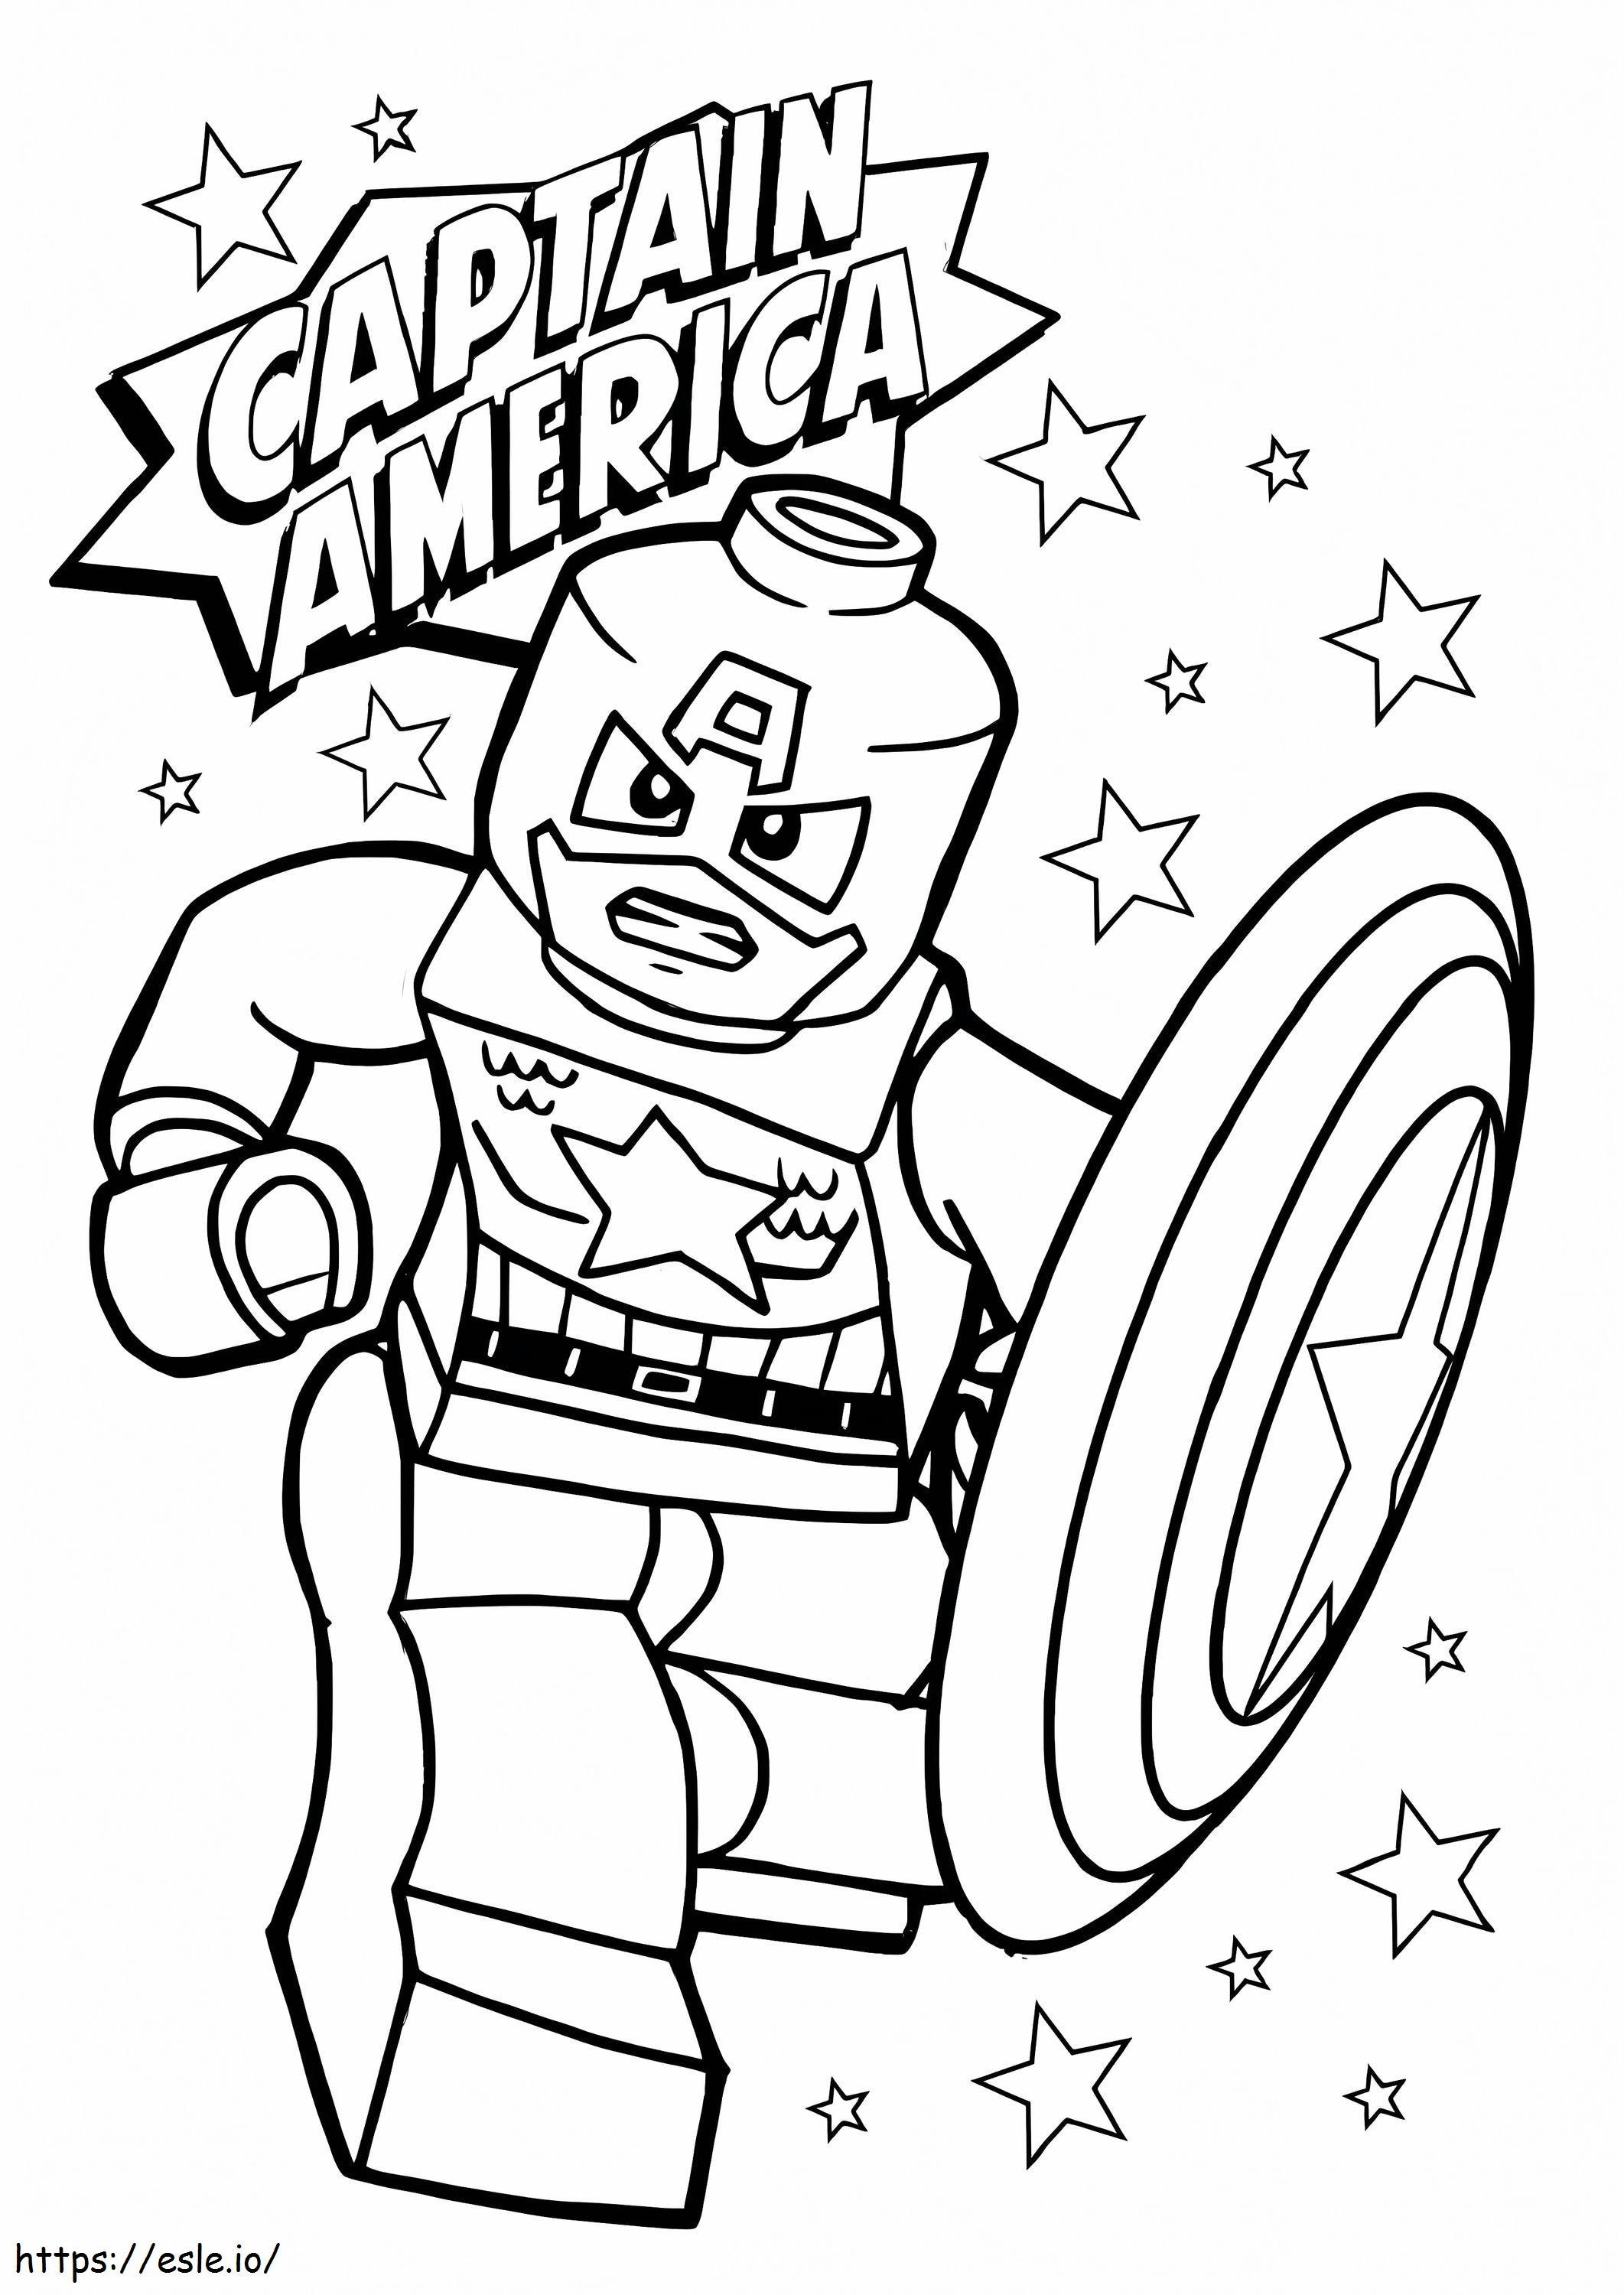 Furios Lego Căpitanul America cu stea de colorat